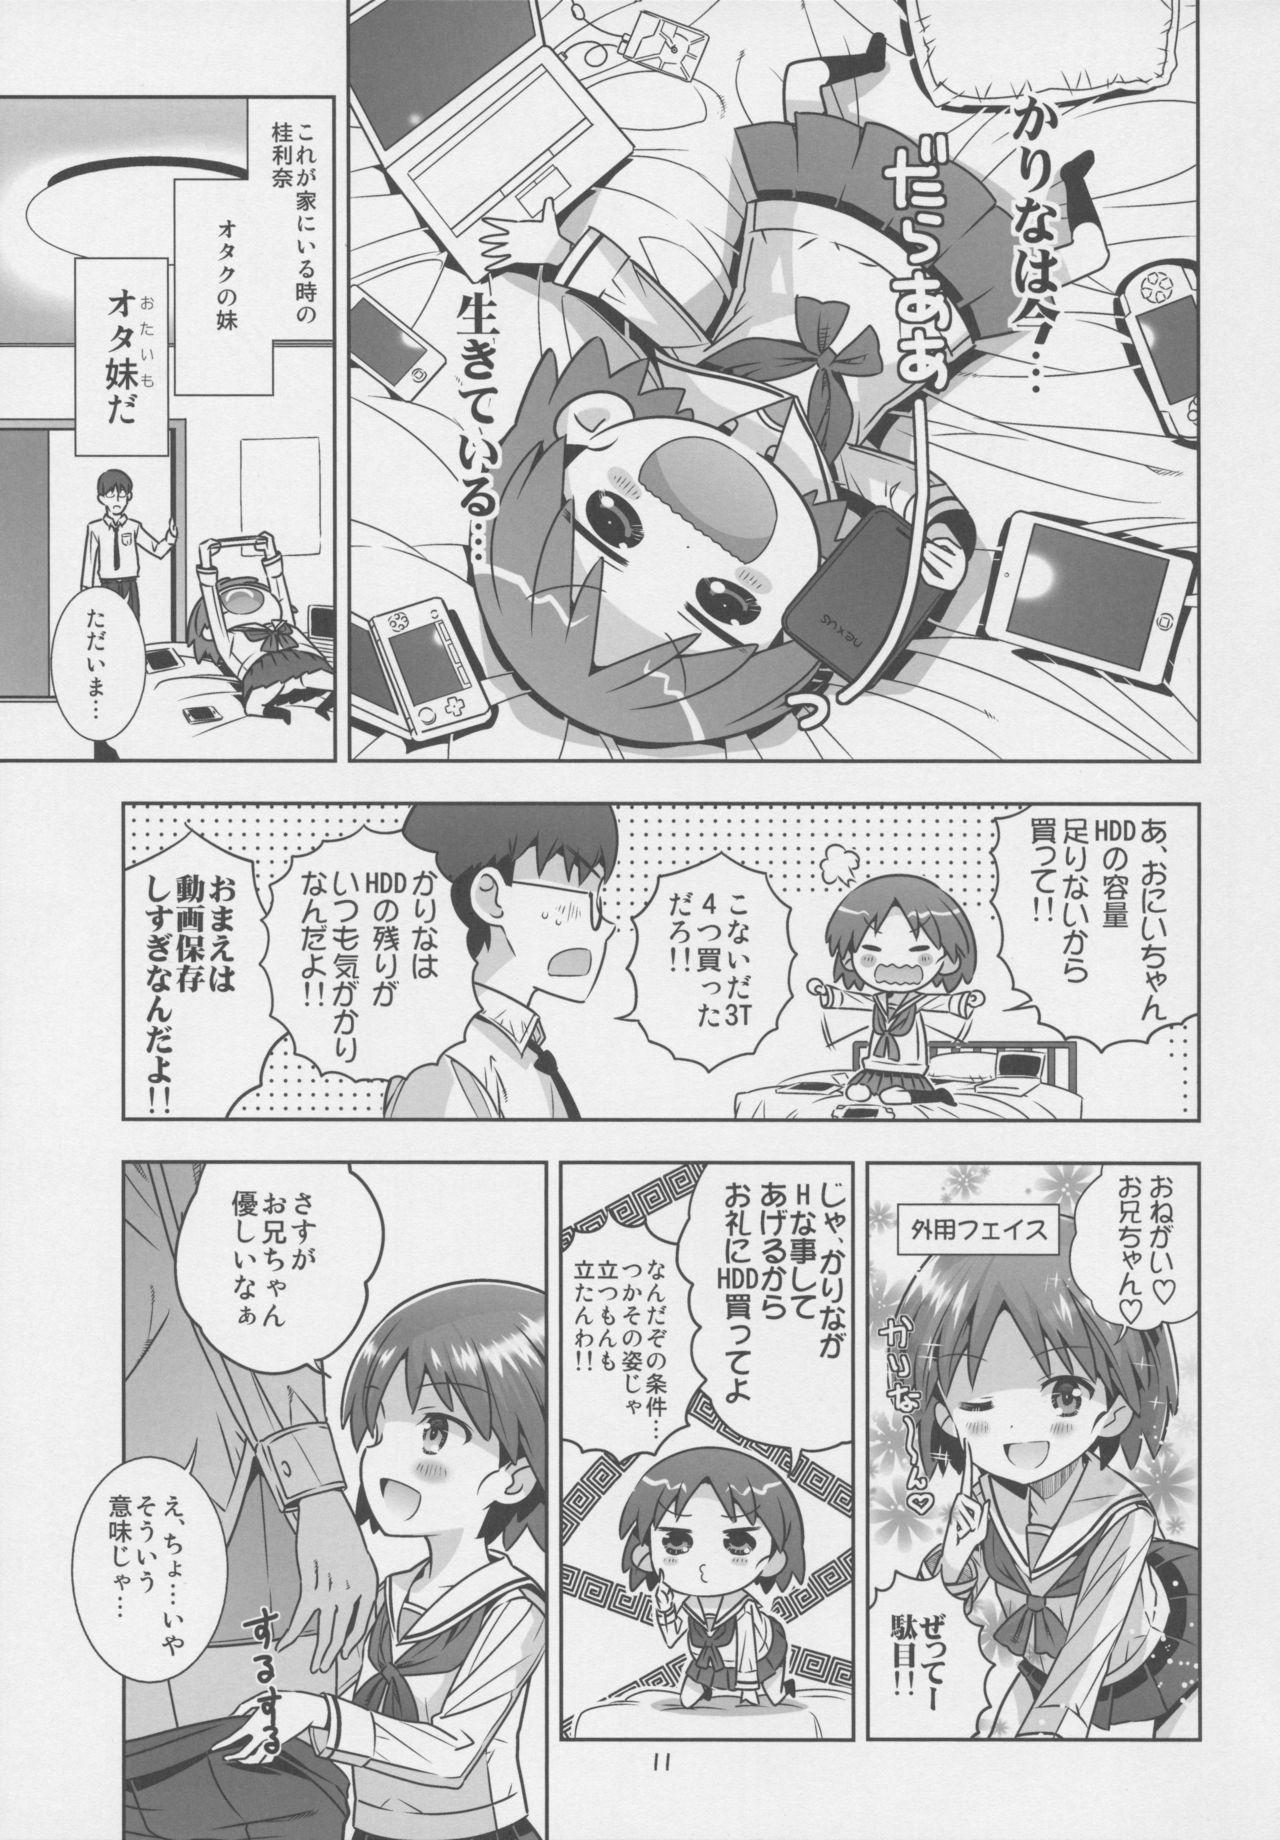 Chupada "AV Shutsuen, Ganbarimasu!!" Ichinensei wa, M-ji Kaikyaku 3 Peace desu! - Girls und panzer Reversecowgirl - Page 10